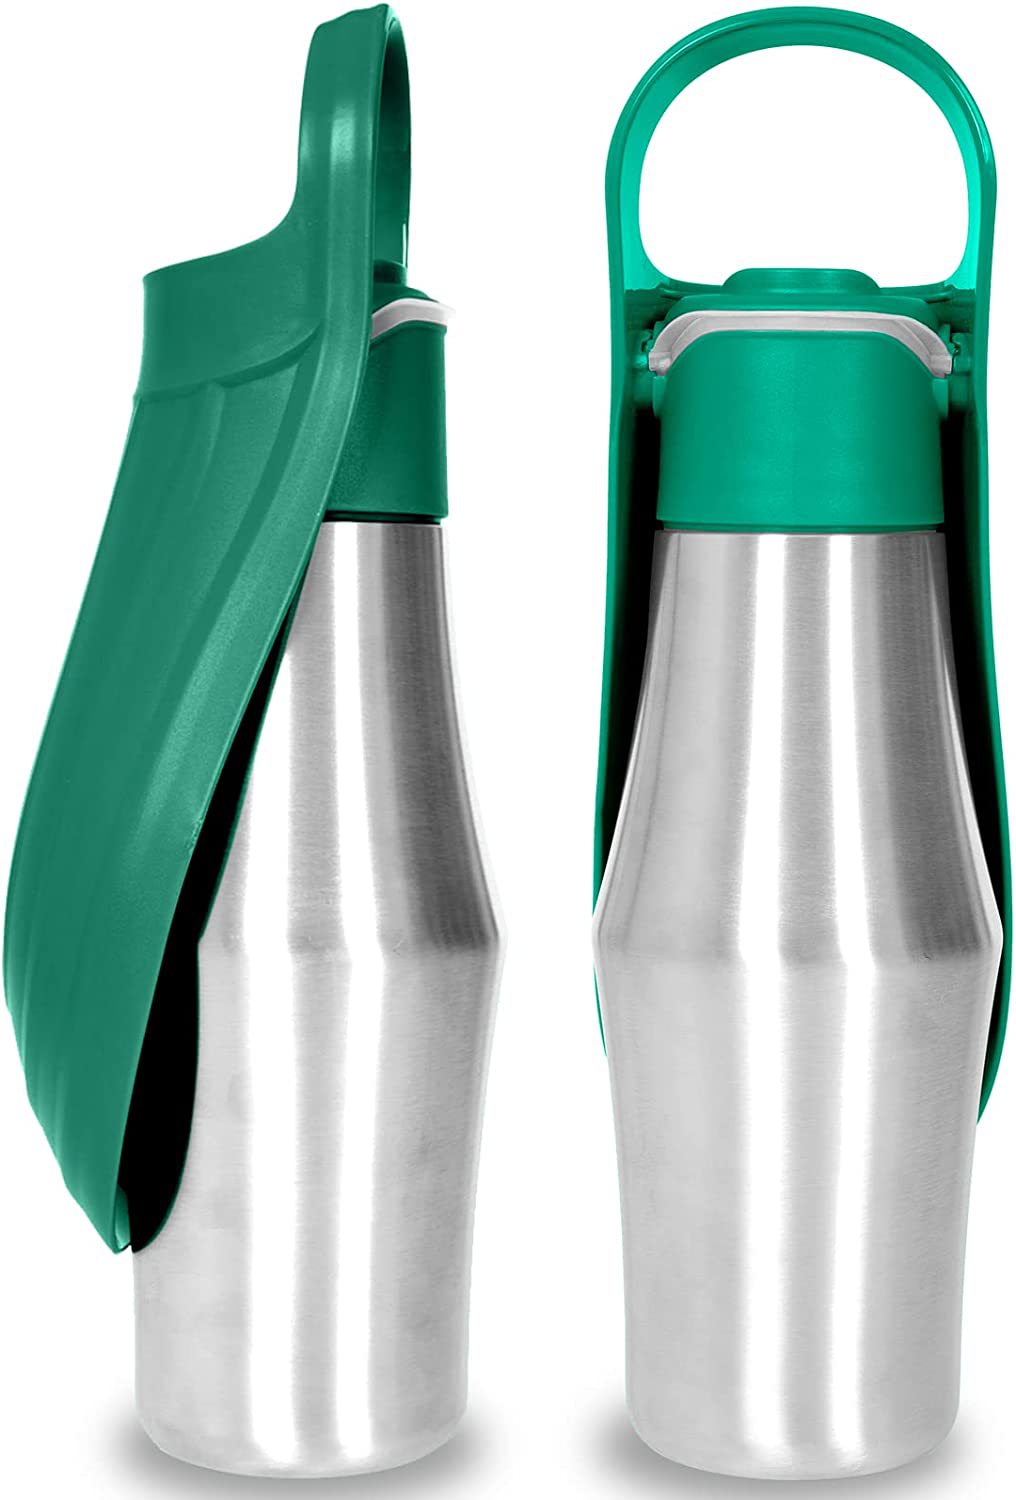 Portable Pet Water Bottle: Leaf Design for Outdoor Travel